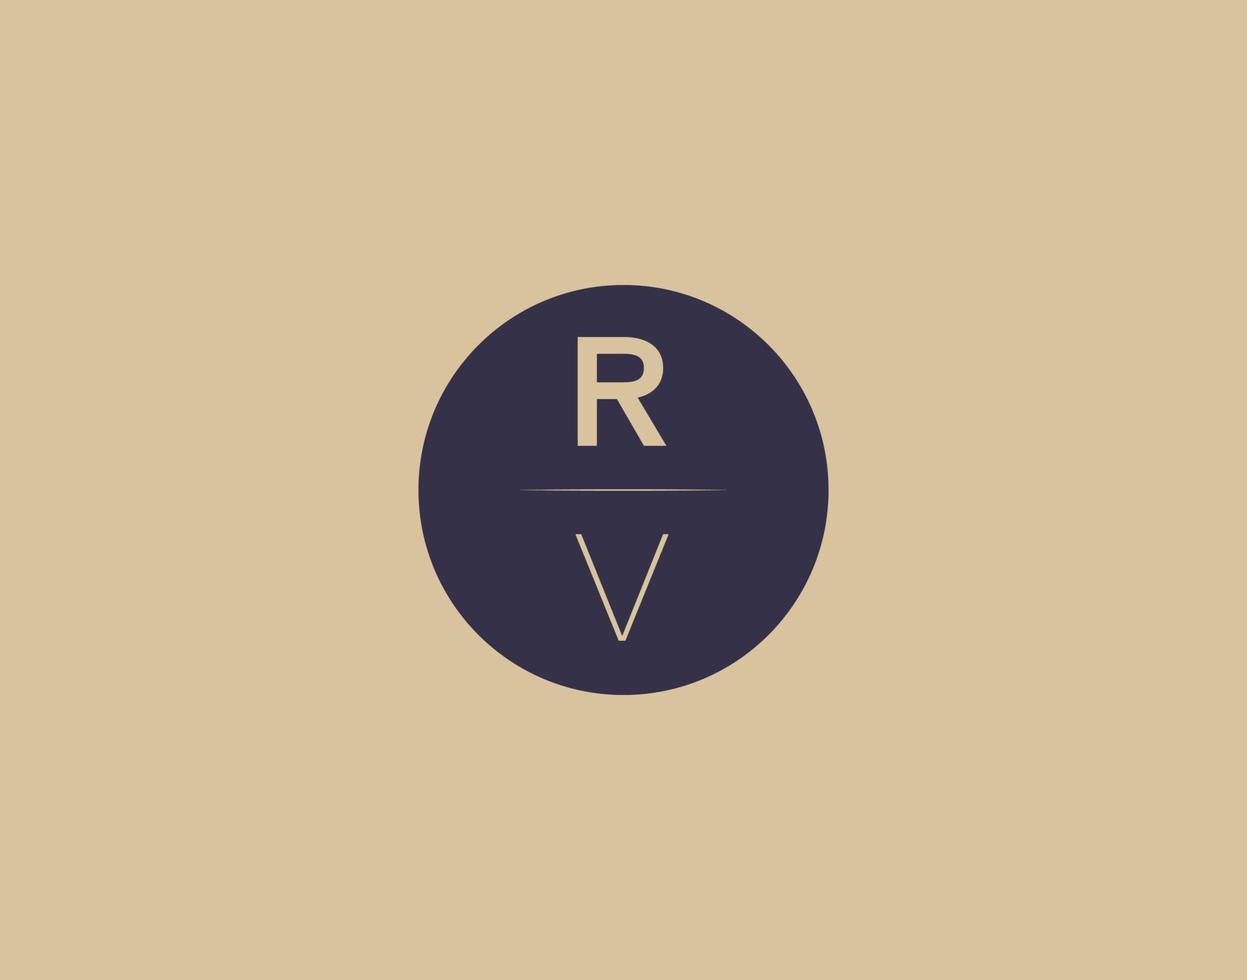 imagens vetoriais de design de logotipo moderno e elegante de carta rv vetor